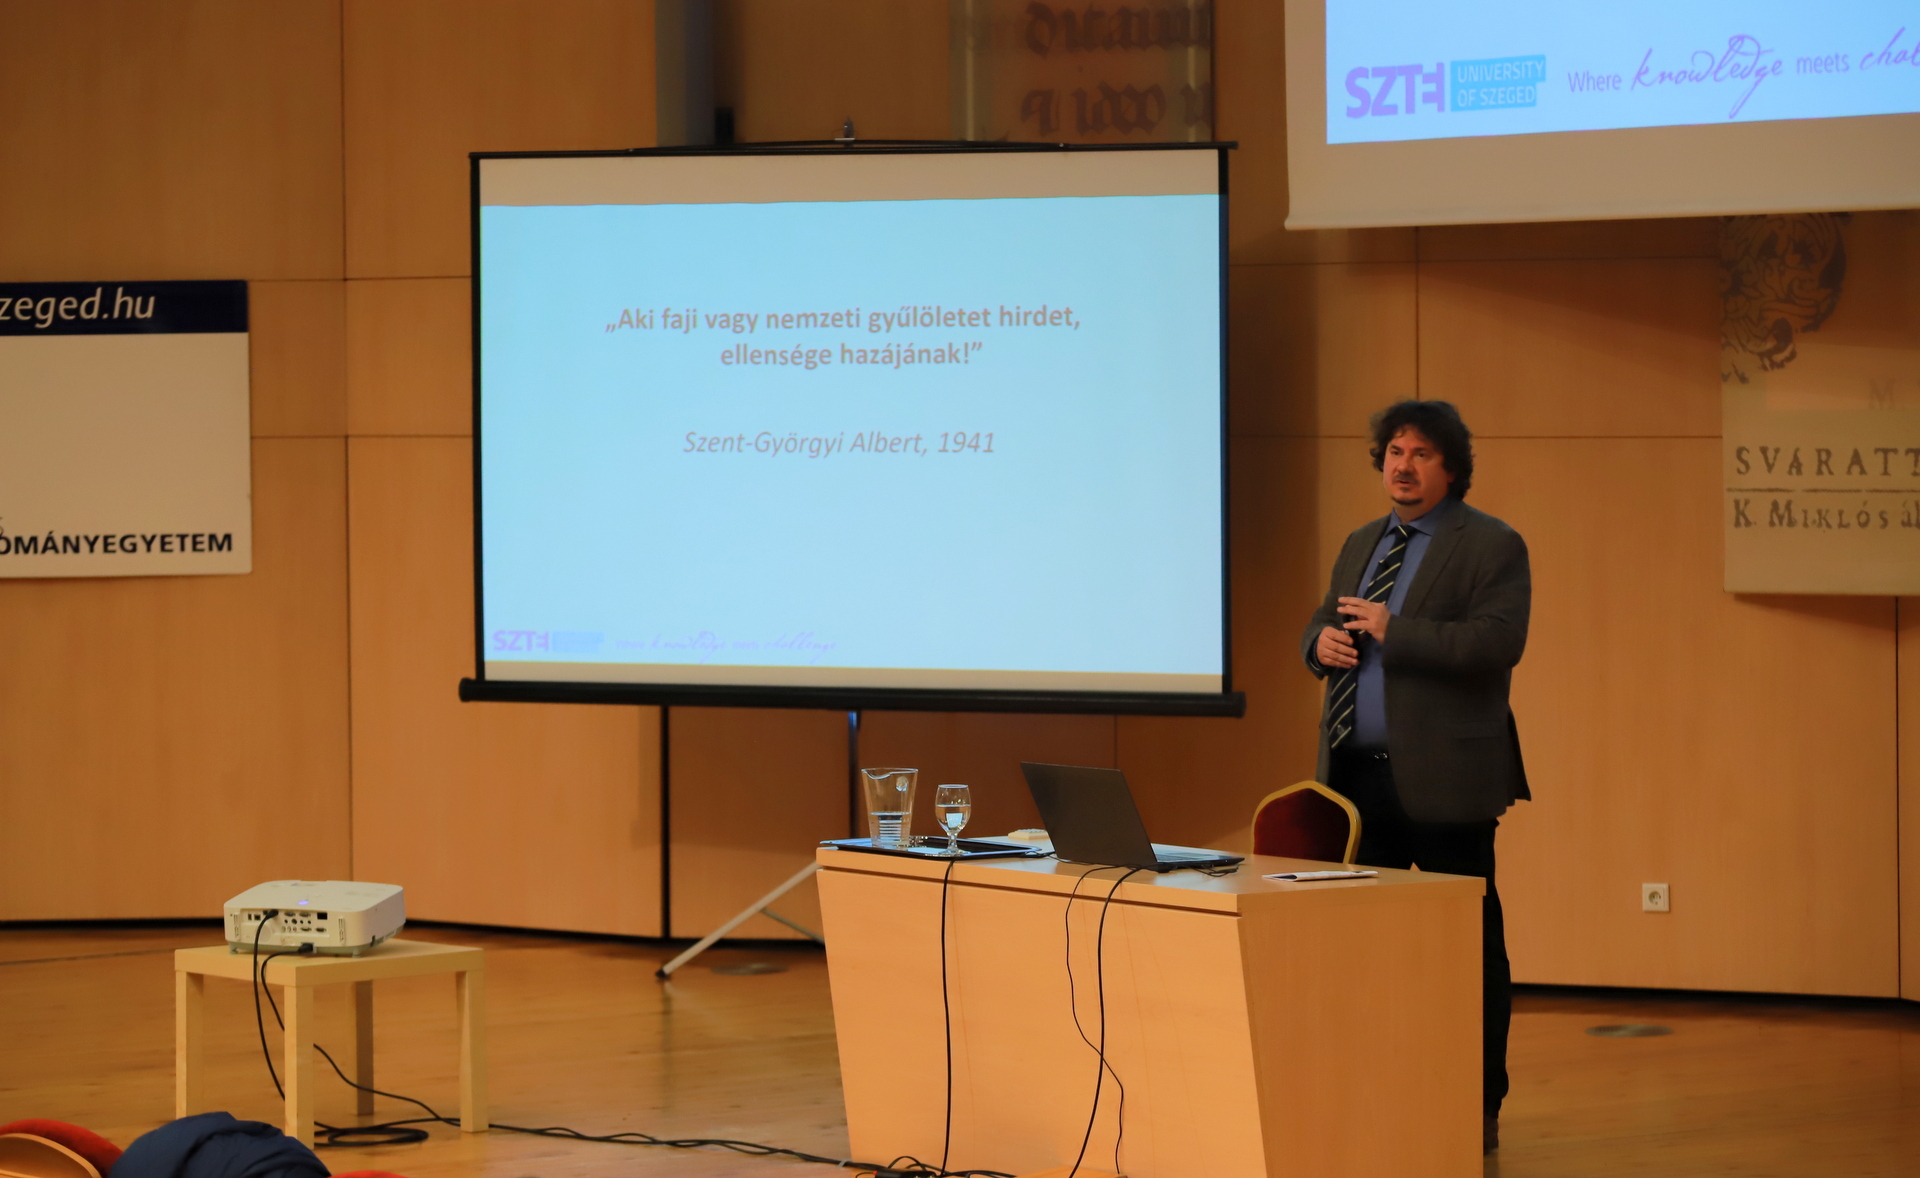 Dr. Jancsák Csaba szociológus előadása a nemzedékeken átívelő értékekről az SZTE Szabadegyetemen